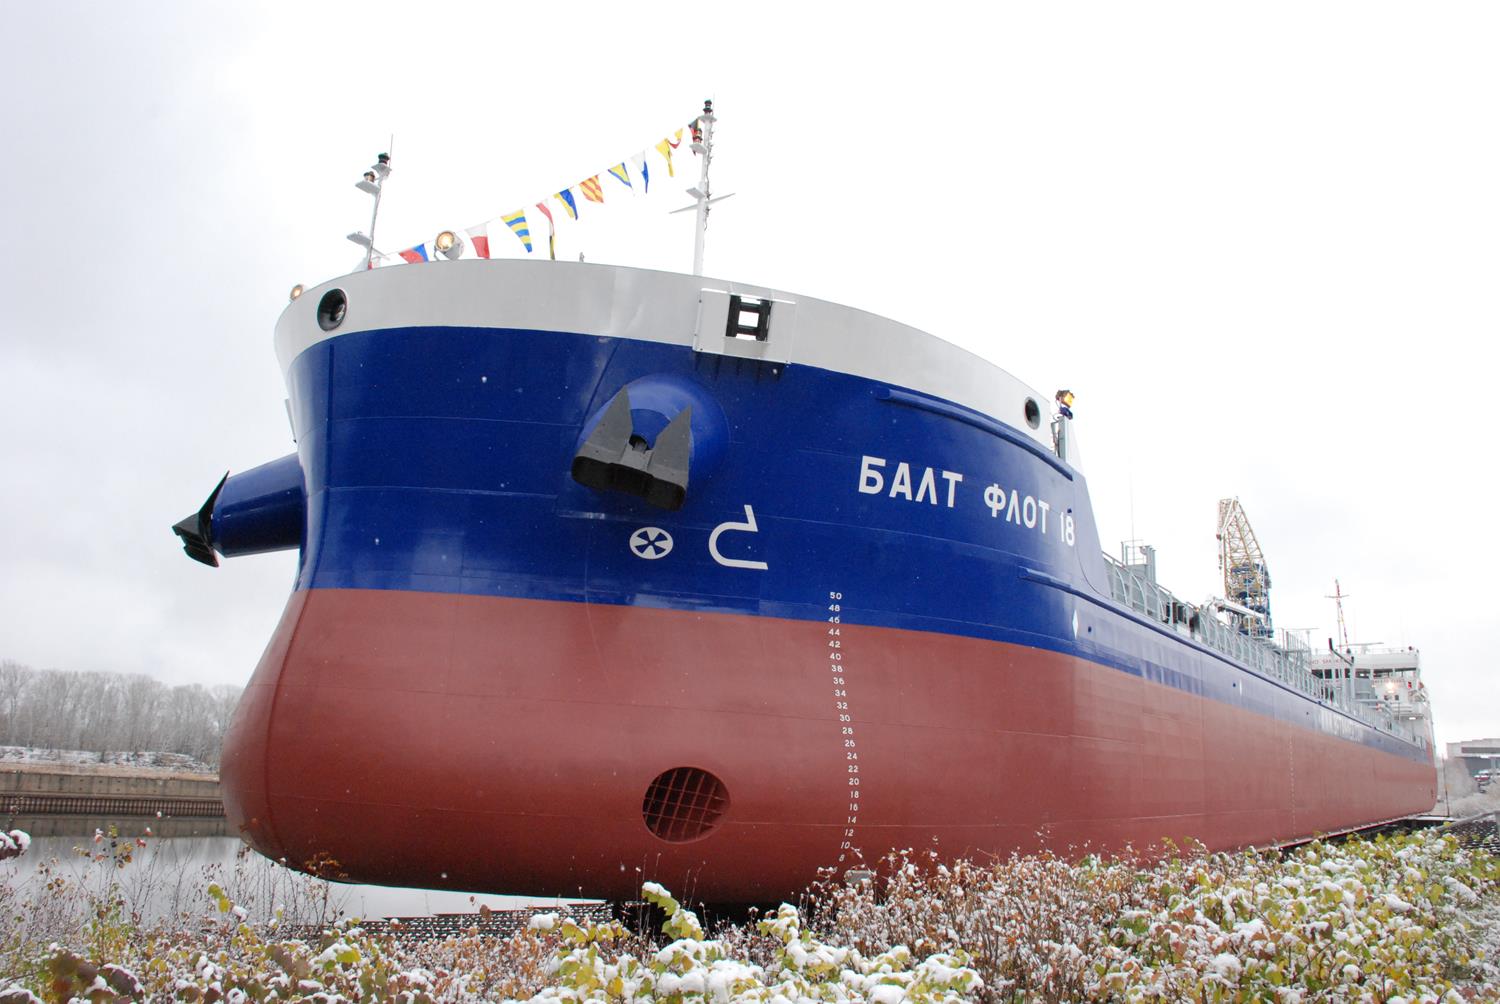 Третий танкер-химовоз нового поколения спущен на воду в Нижнем Новгороде (ФОТО) - фото 1